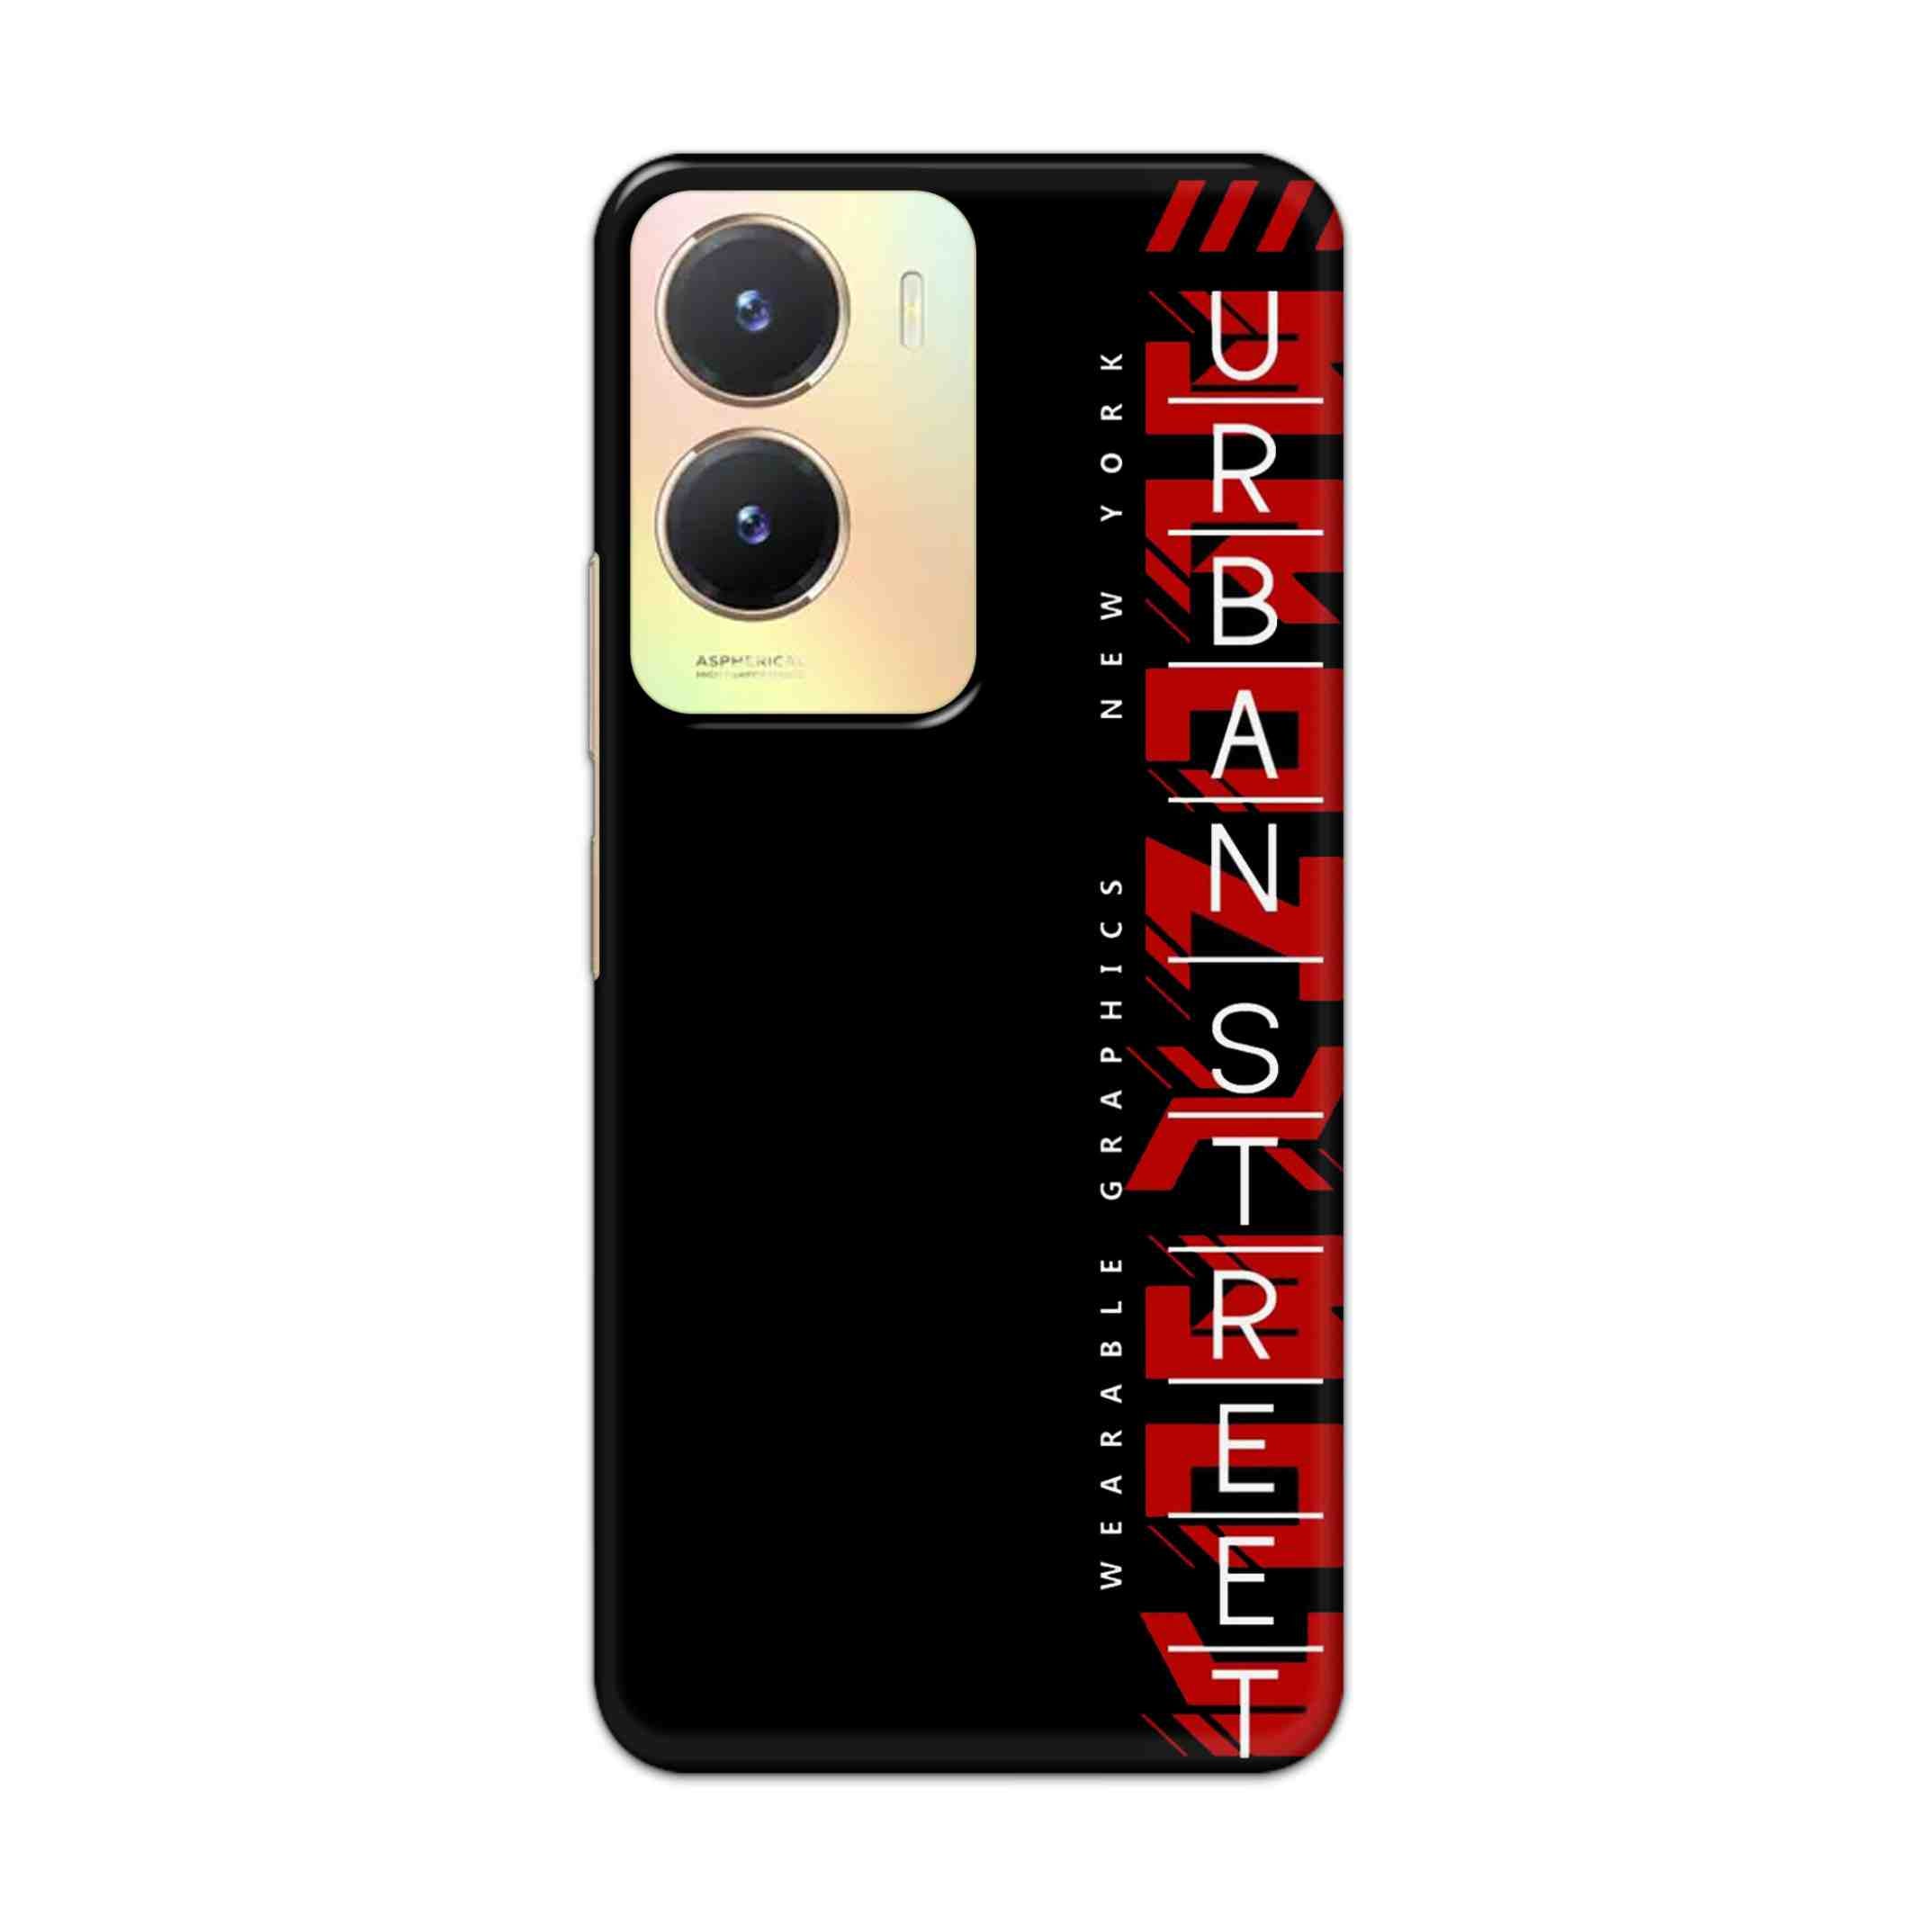 Buy Urban Street Hard Back Mobile Phone Case Cover For Vivo T2x Online